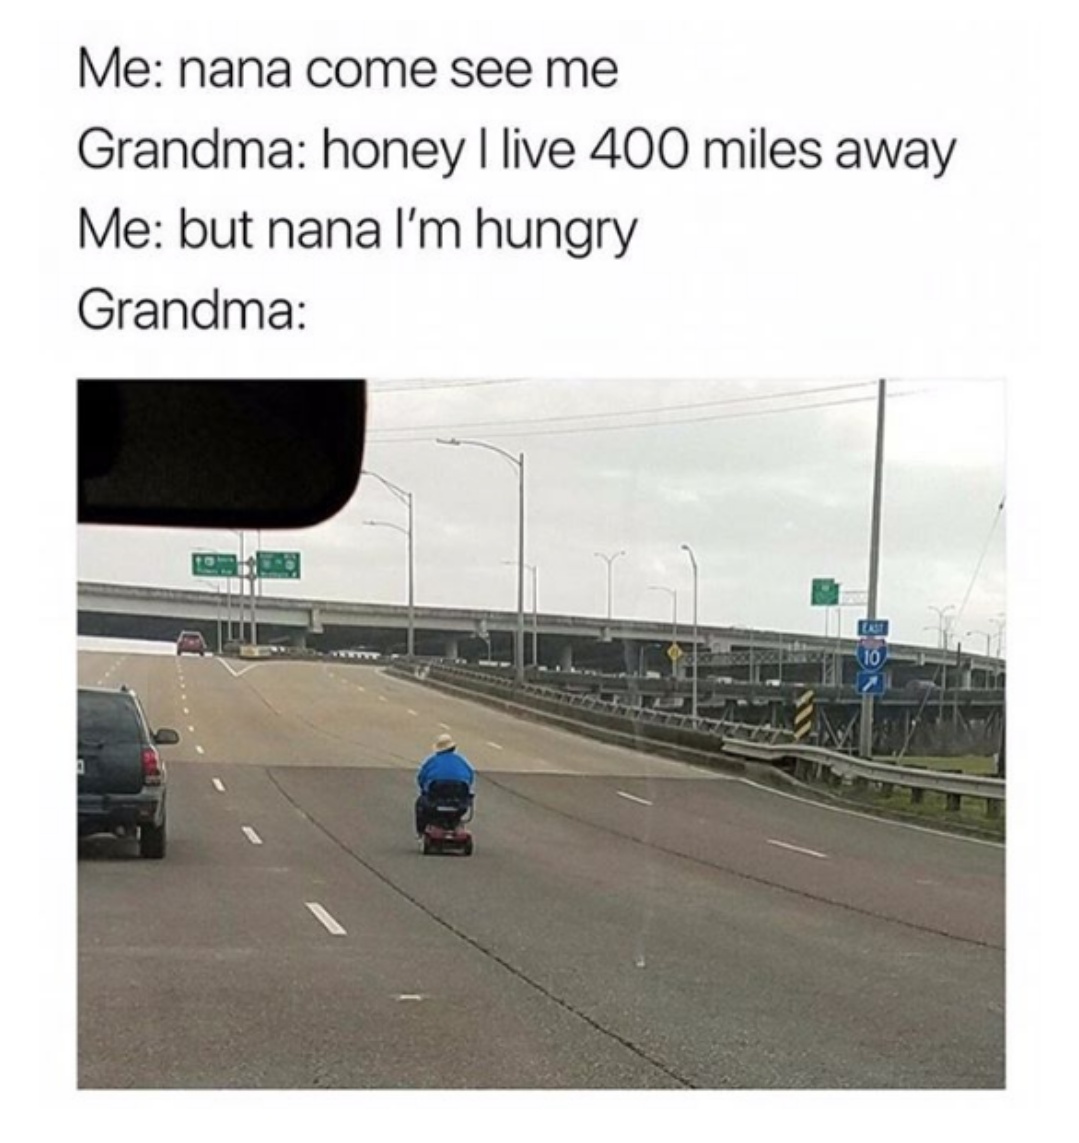 grandma i m hungry meme - Me nana come see me Grandma honey I live 400 miles away Me but nana I'm hungry Grandma